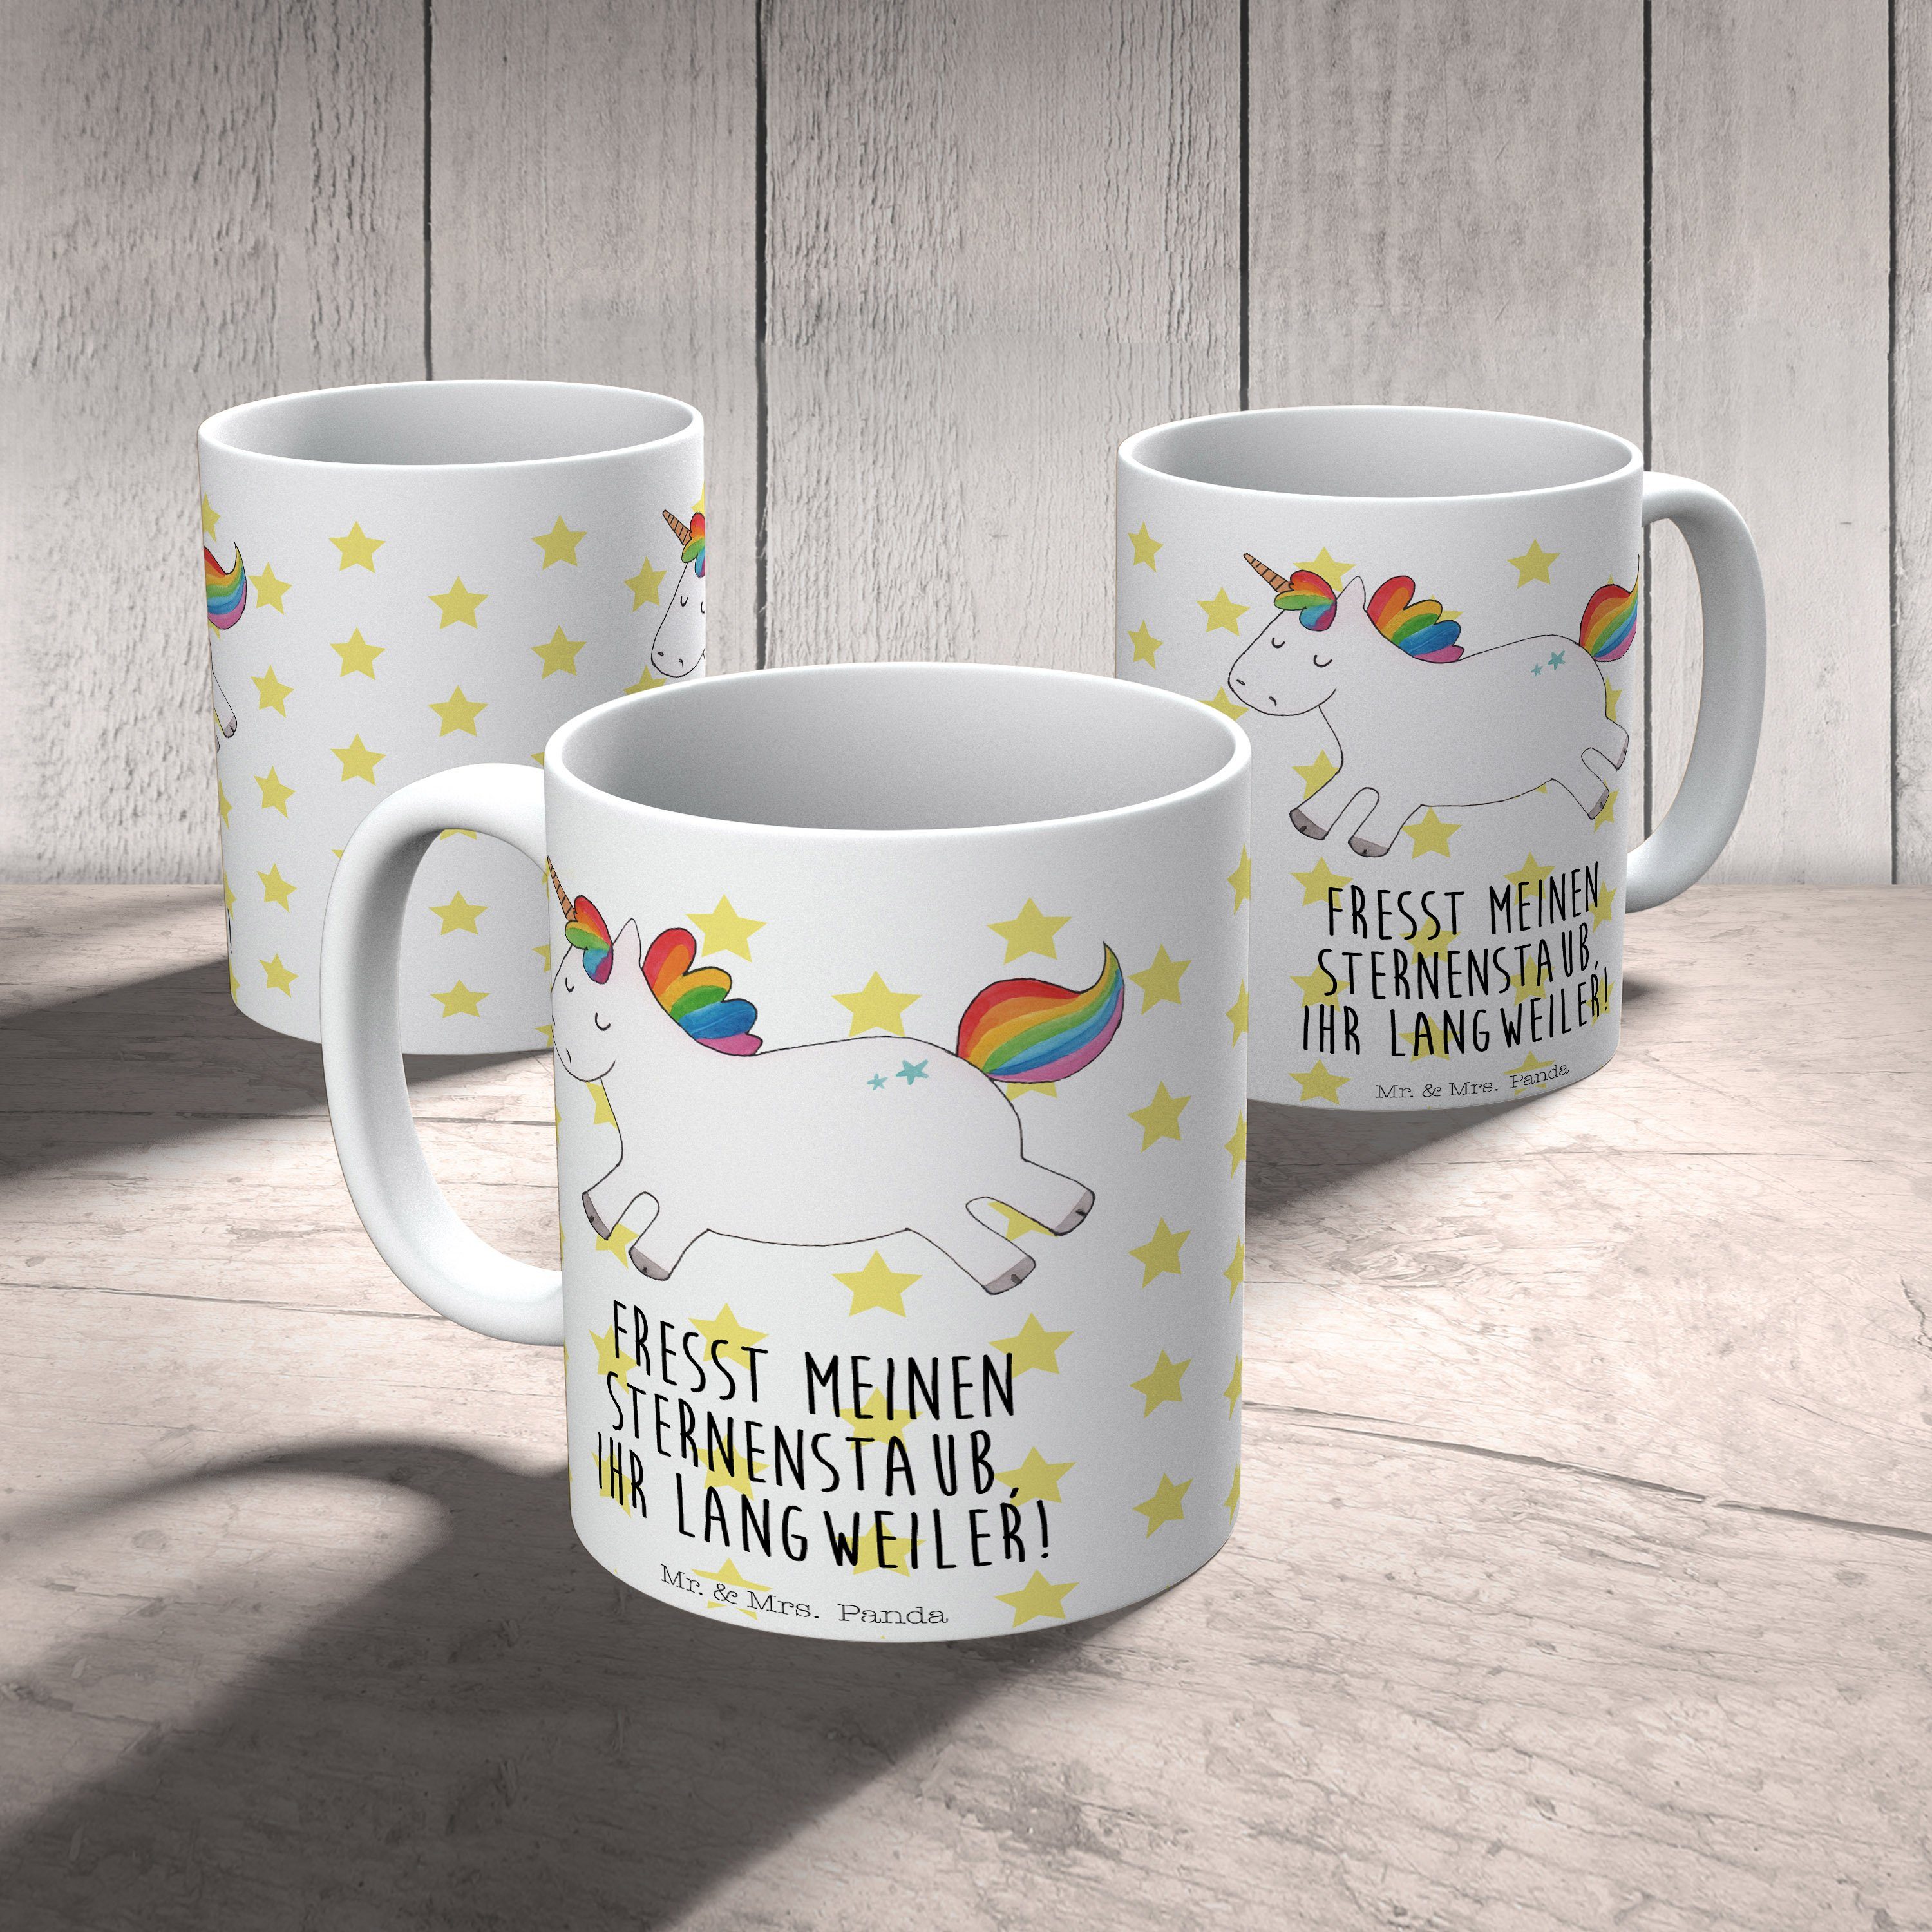 Mr. & Mrs. Panda Tasse Geschenk, Tasse Sprüche, - Tasse, Keramiktasse, Shelly Kaffeebecher, Keramik